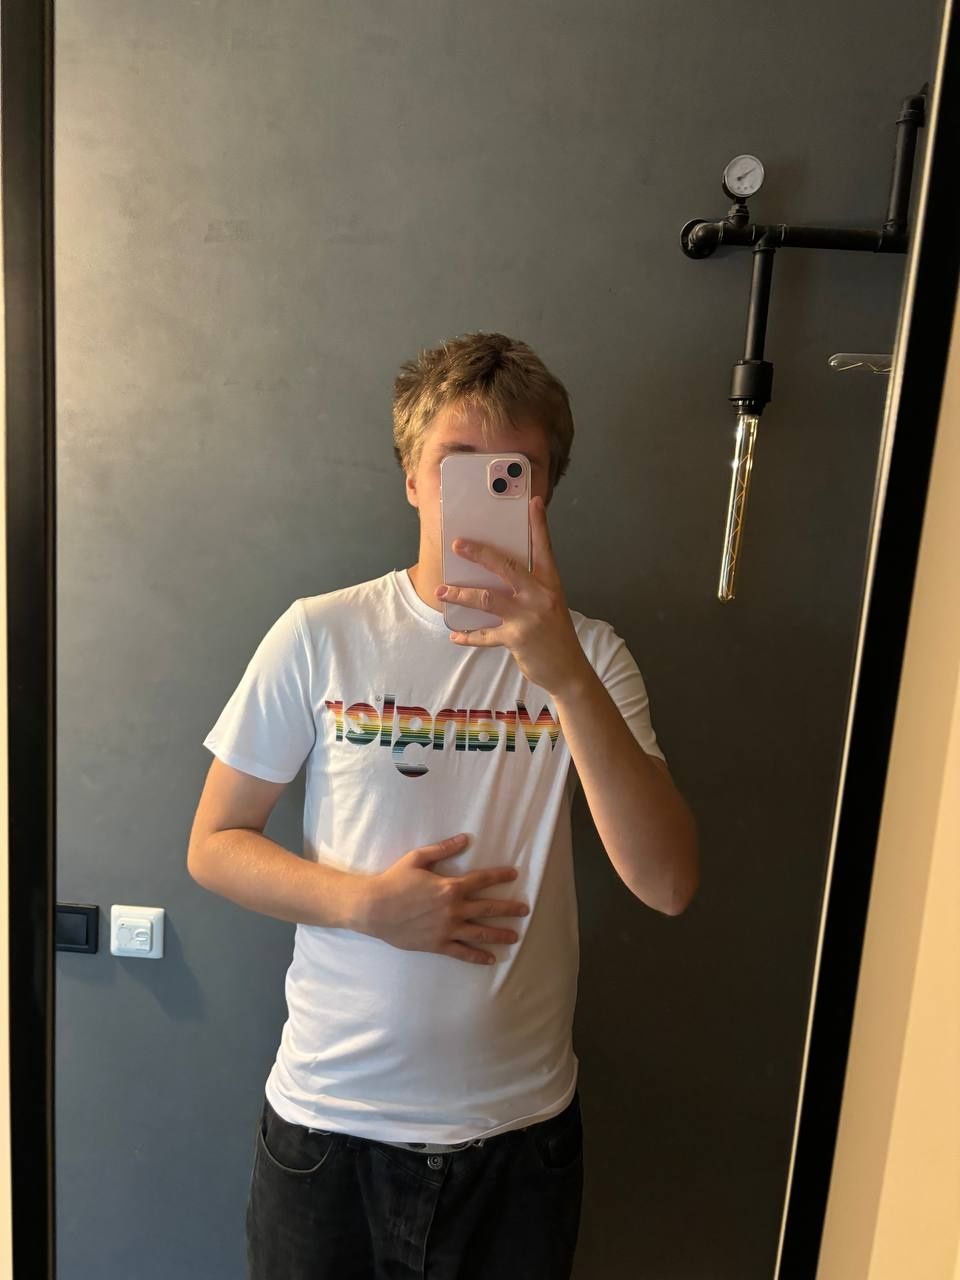 Новая футболка Wrangler мужская белая С-М мужская